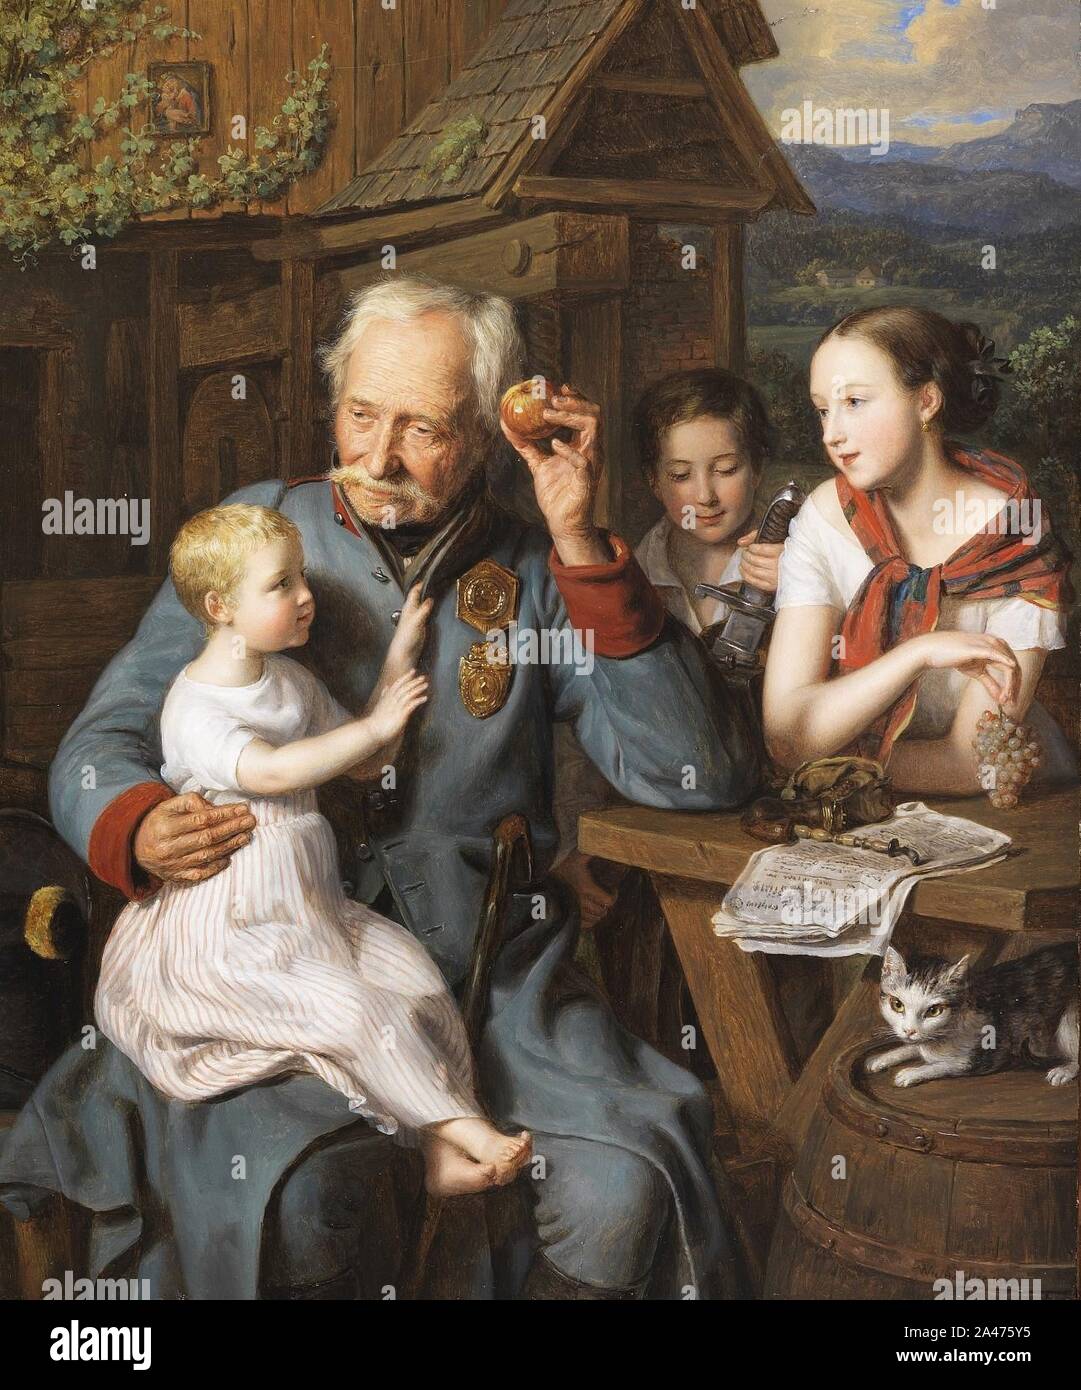 Ferdinand Georg Waldmüller Ein alter Invalide mit drei Kindern 1827. Stock Photo